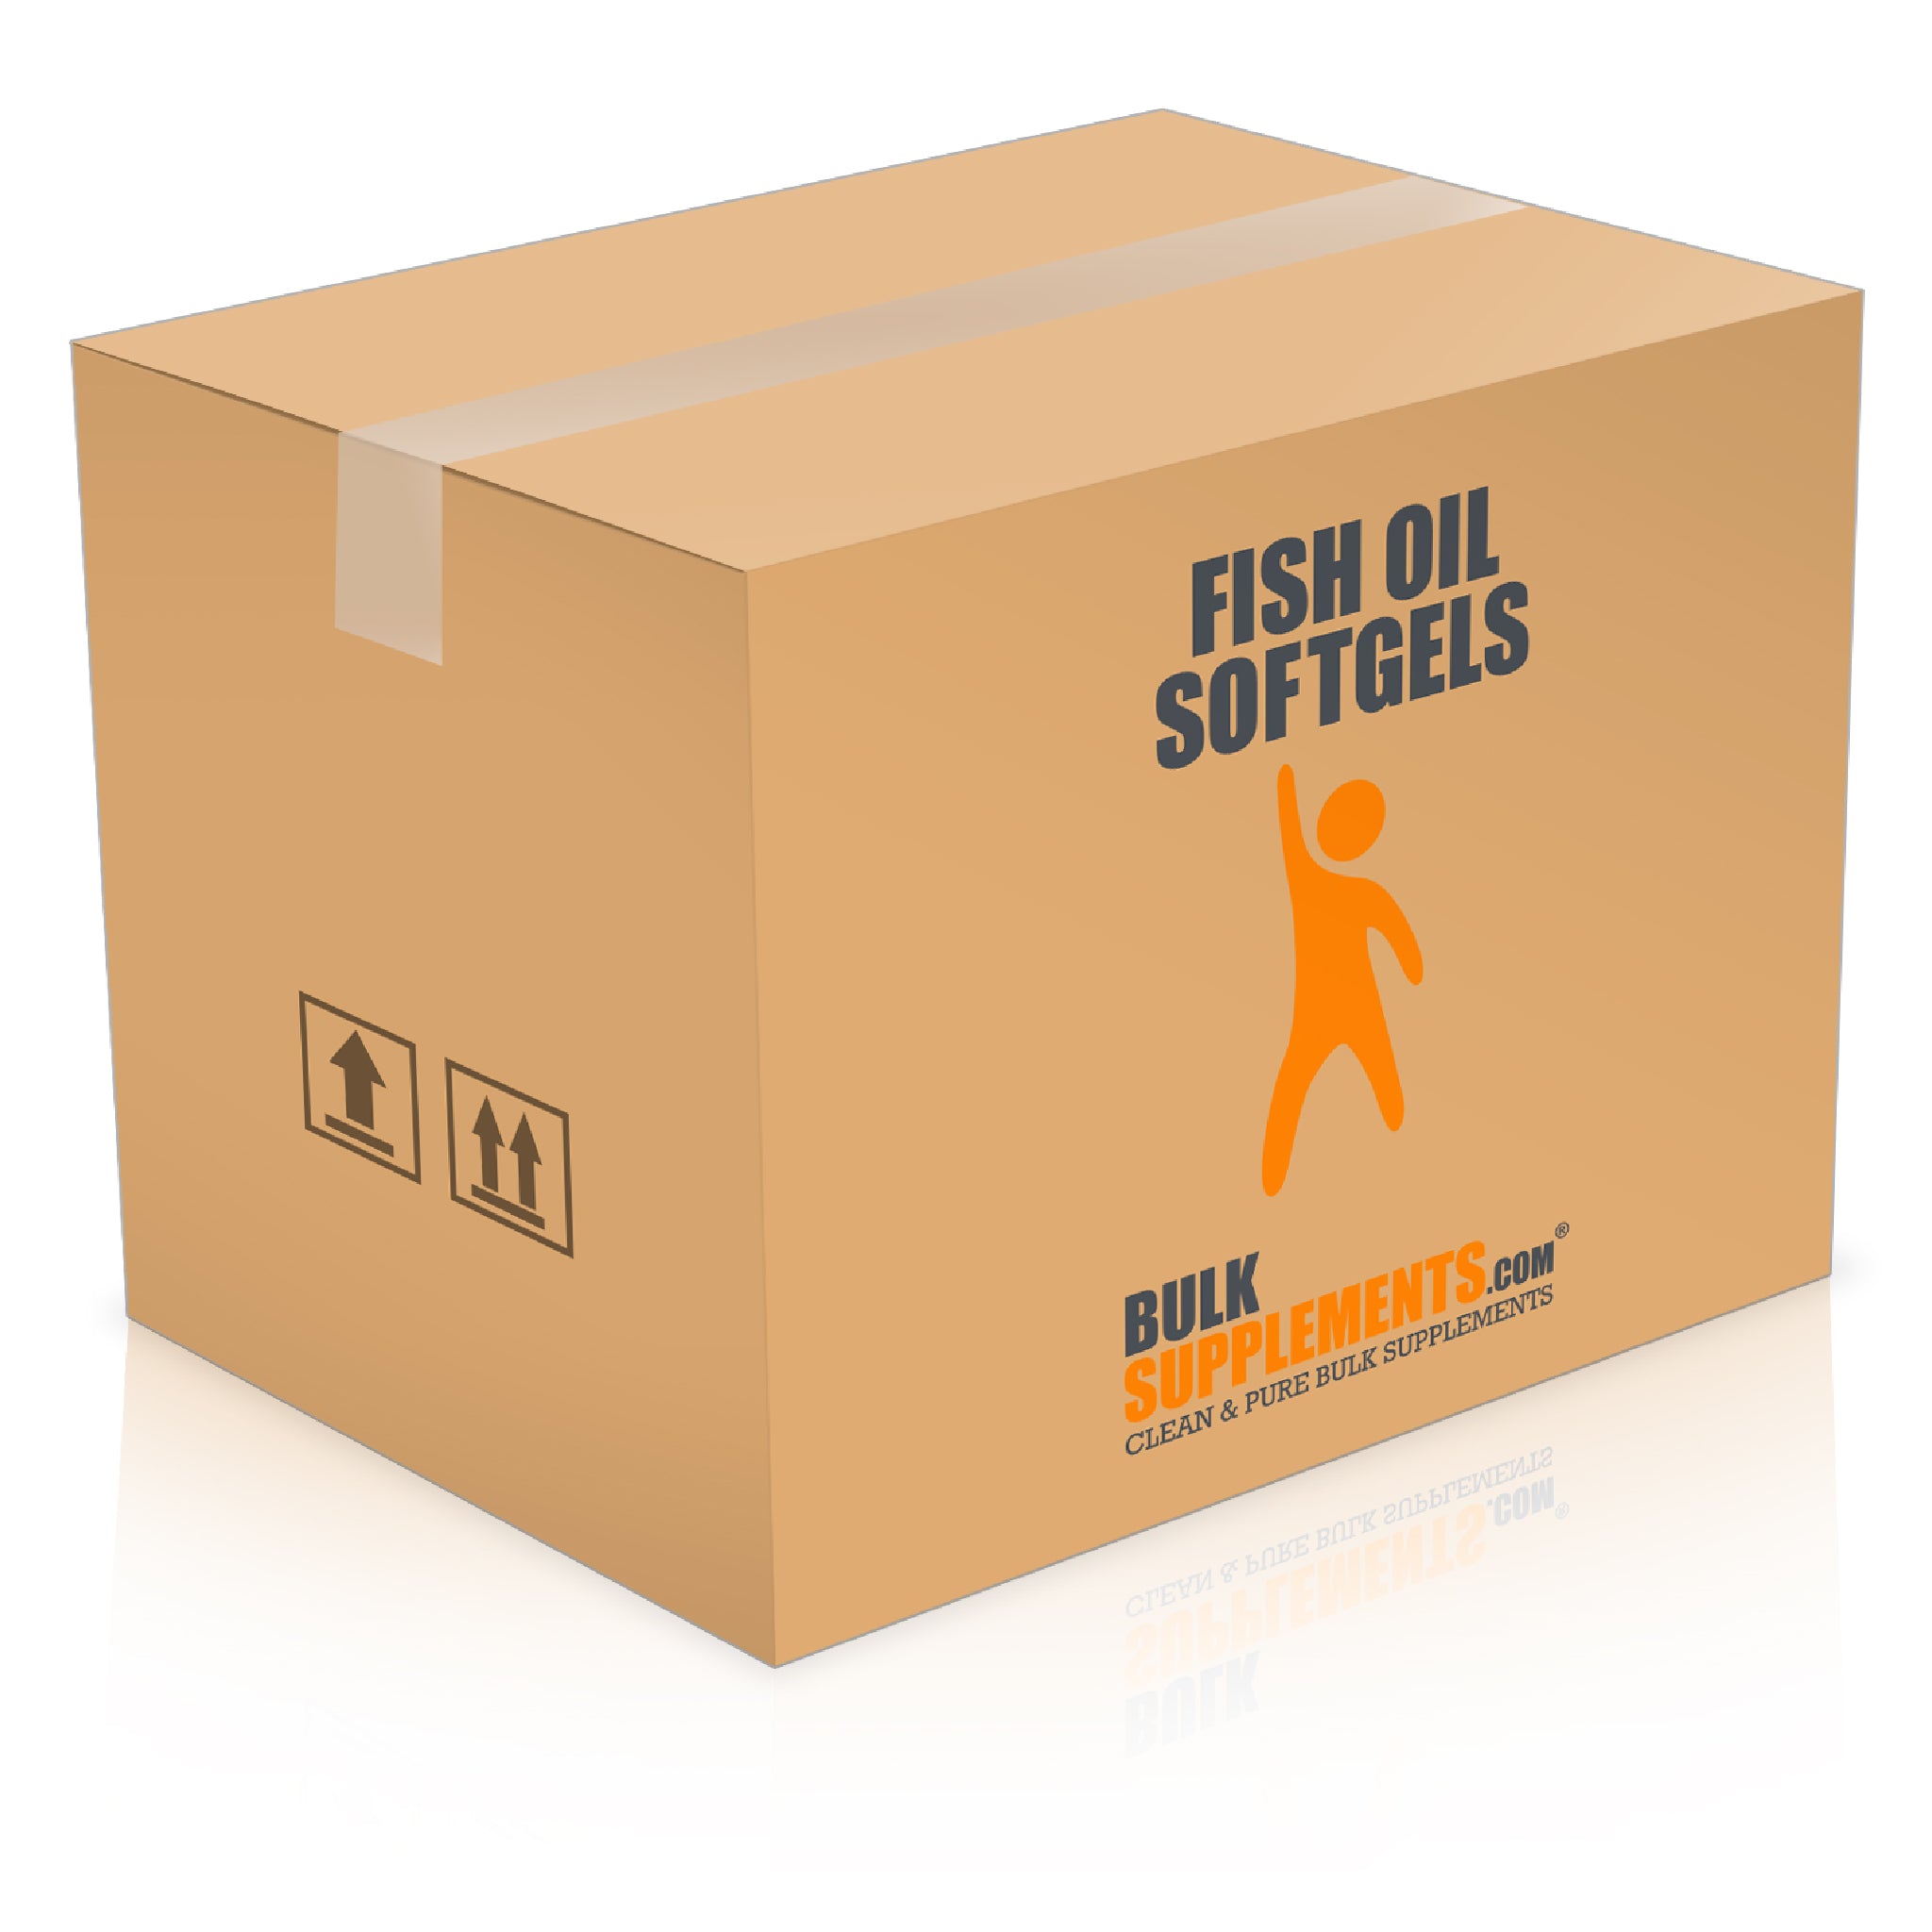 BulkSupplements Fish Oil Softgels 6000 softgels box bulk